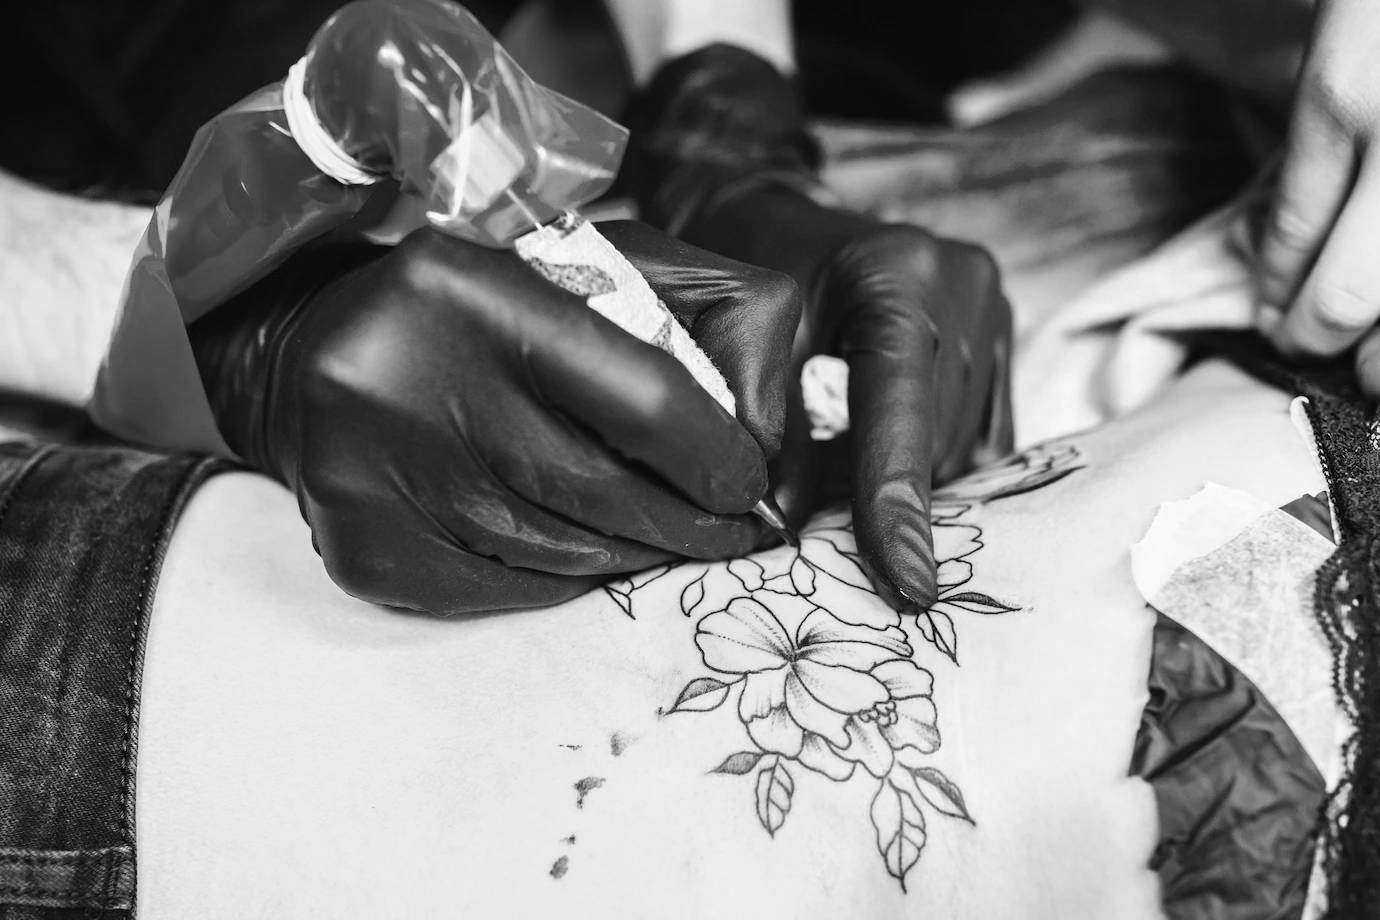 68-hands-making-tattoo-with-machine23-2147833984.jpg